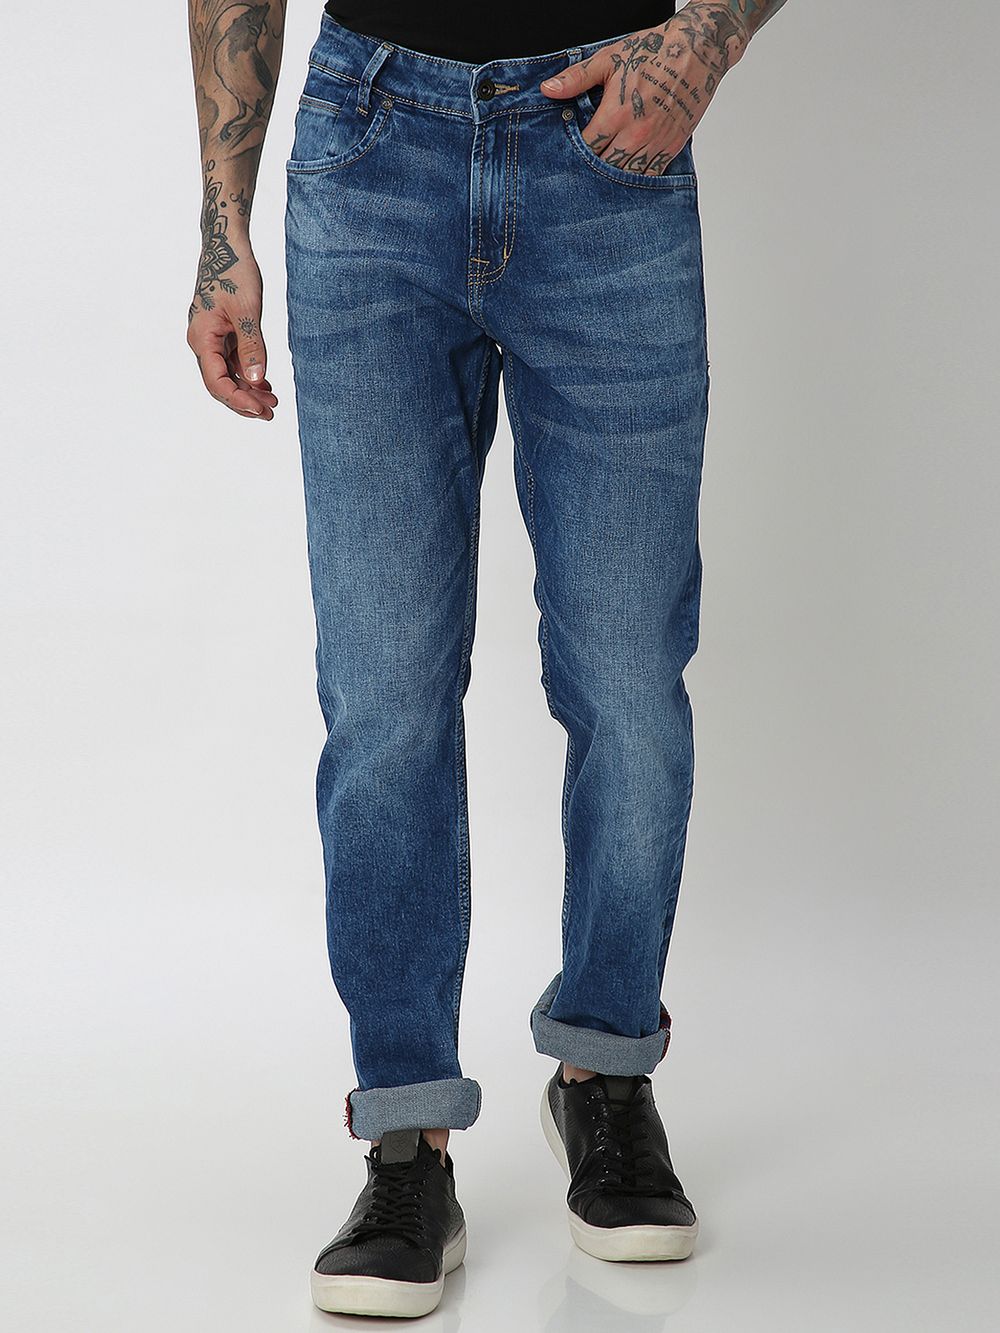 Dark Indigo Blue Ankle Length Originals Stretch Jeans